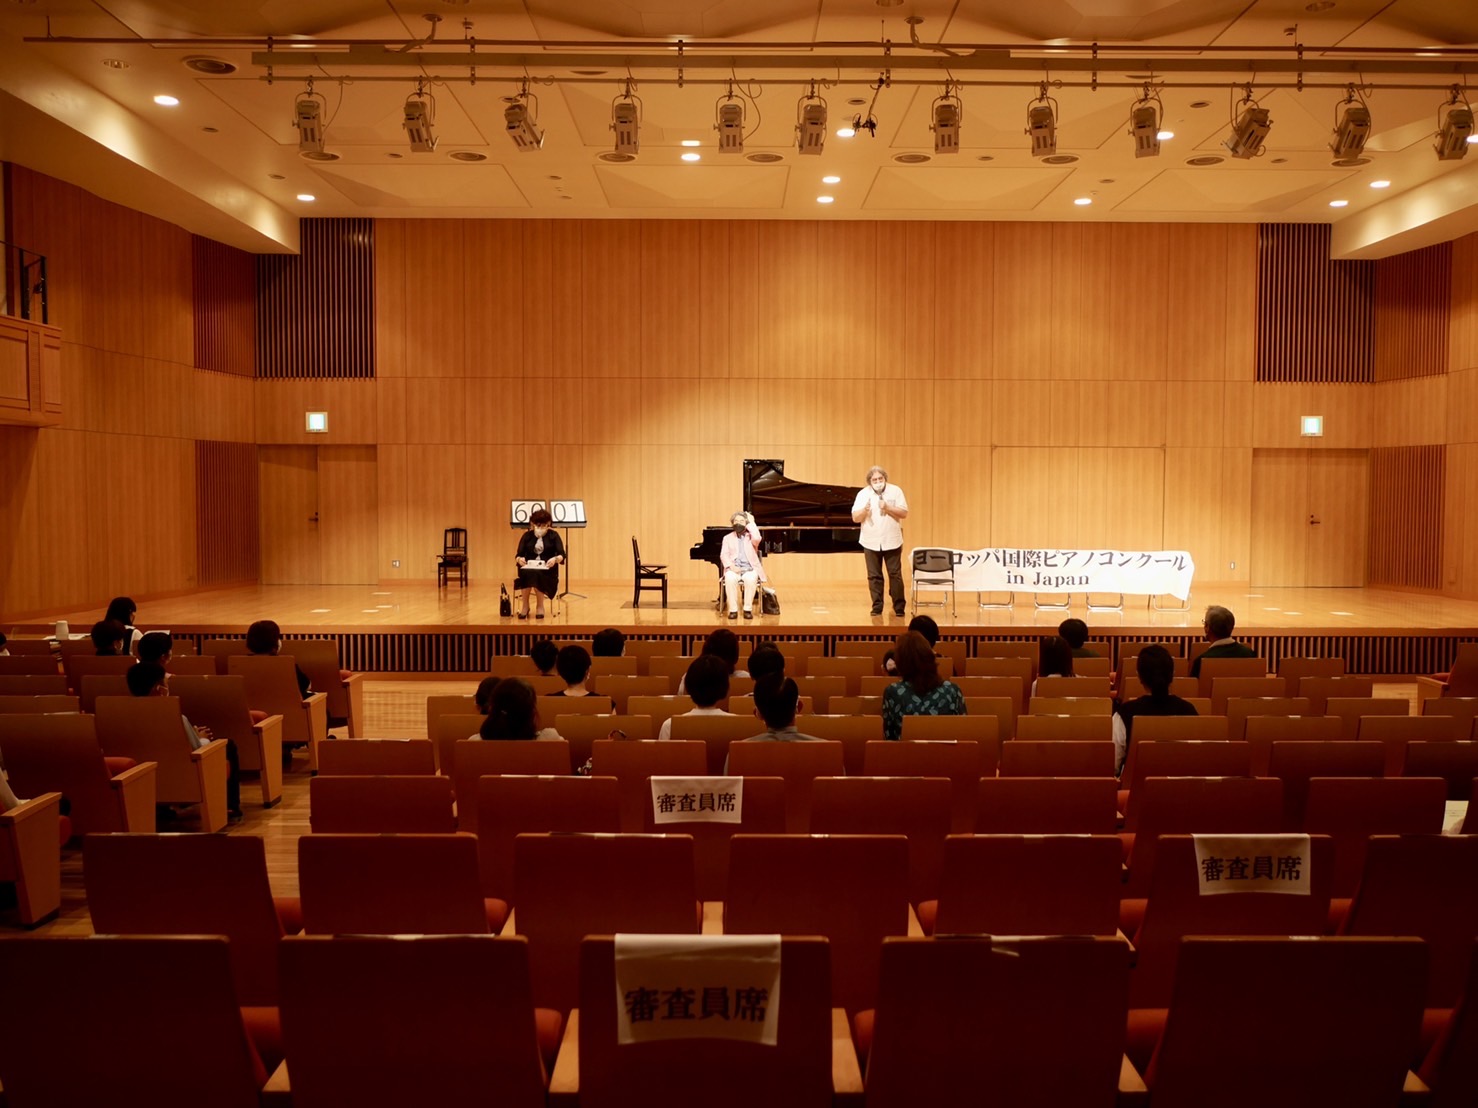 第13回ヨーロッパ国際ピアノコンクール in Japan 名古屋地区予選